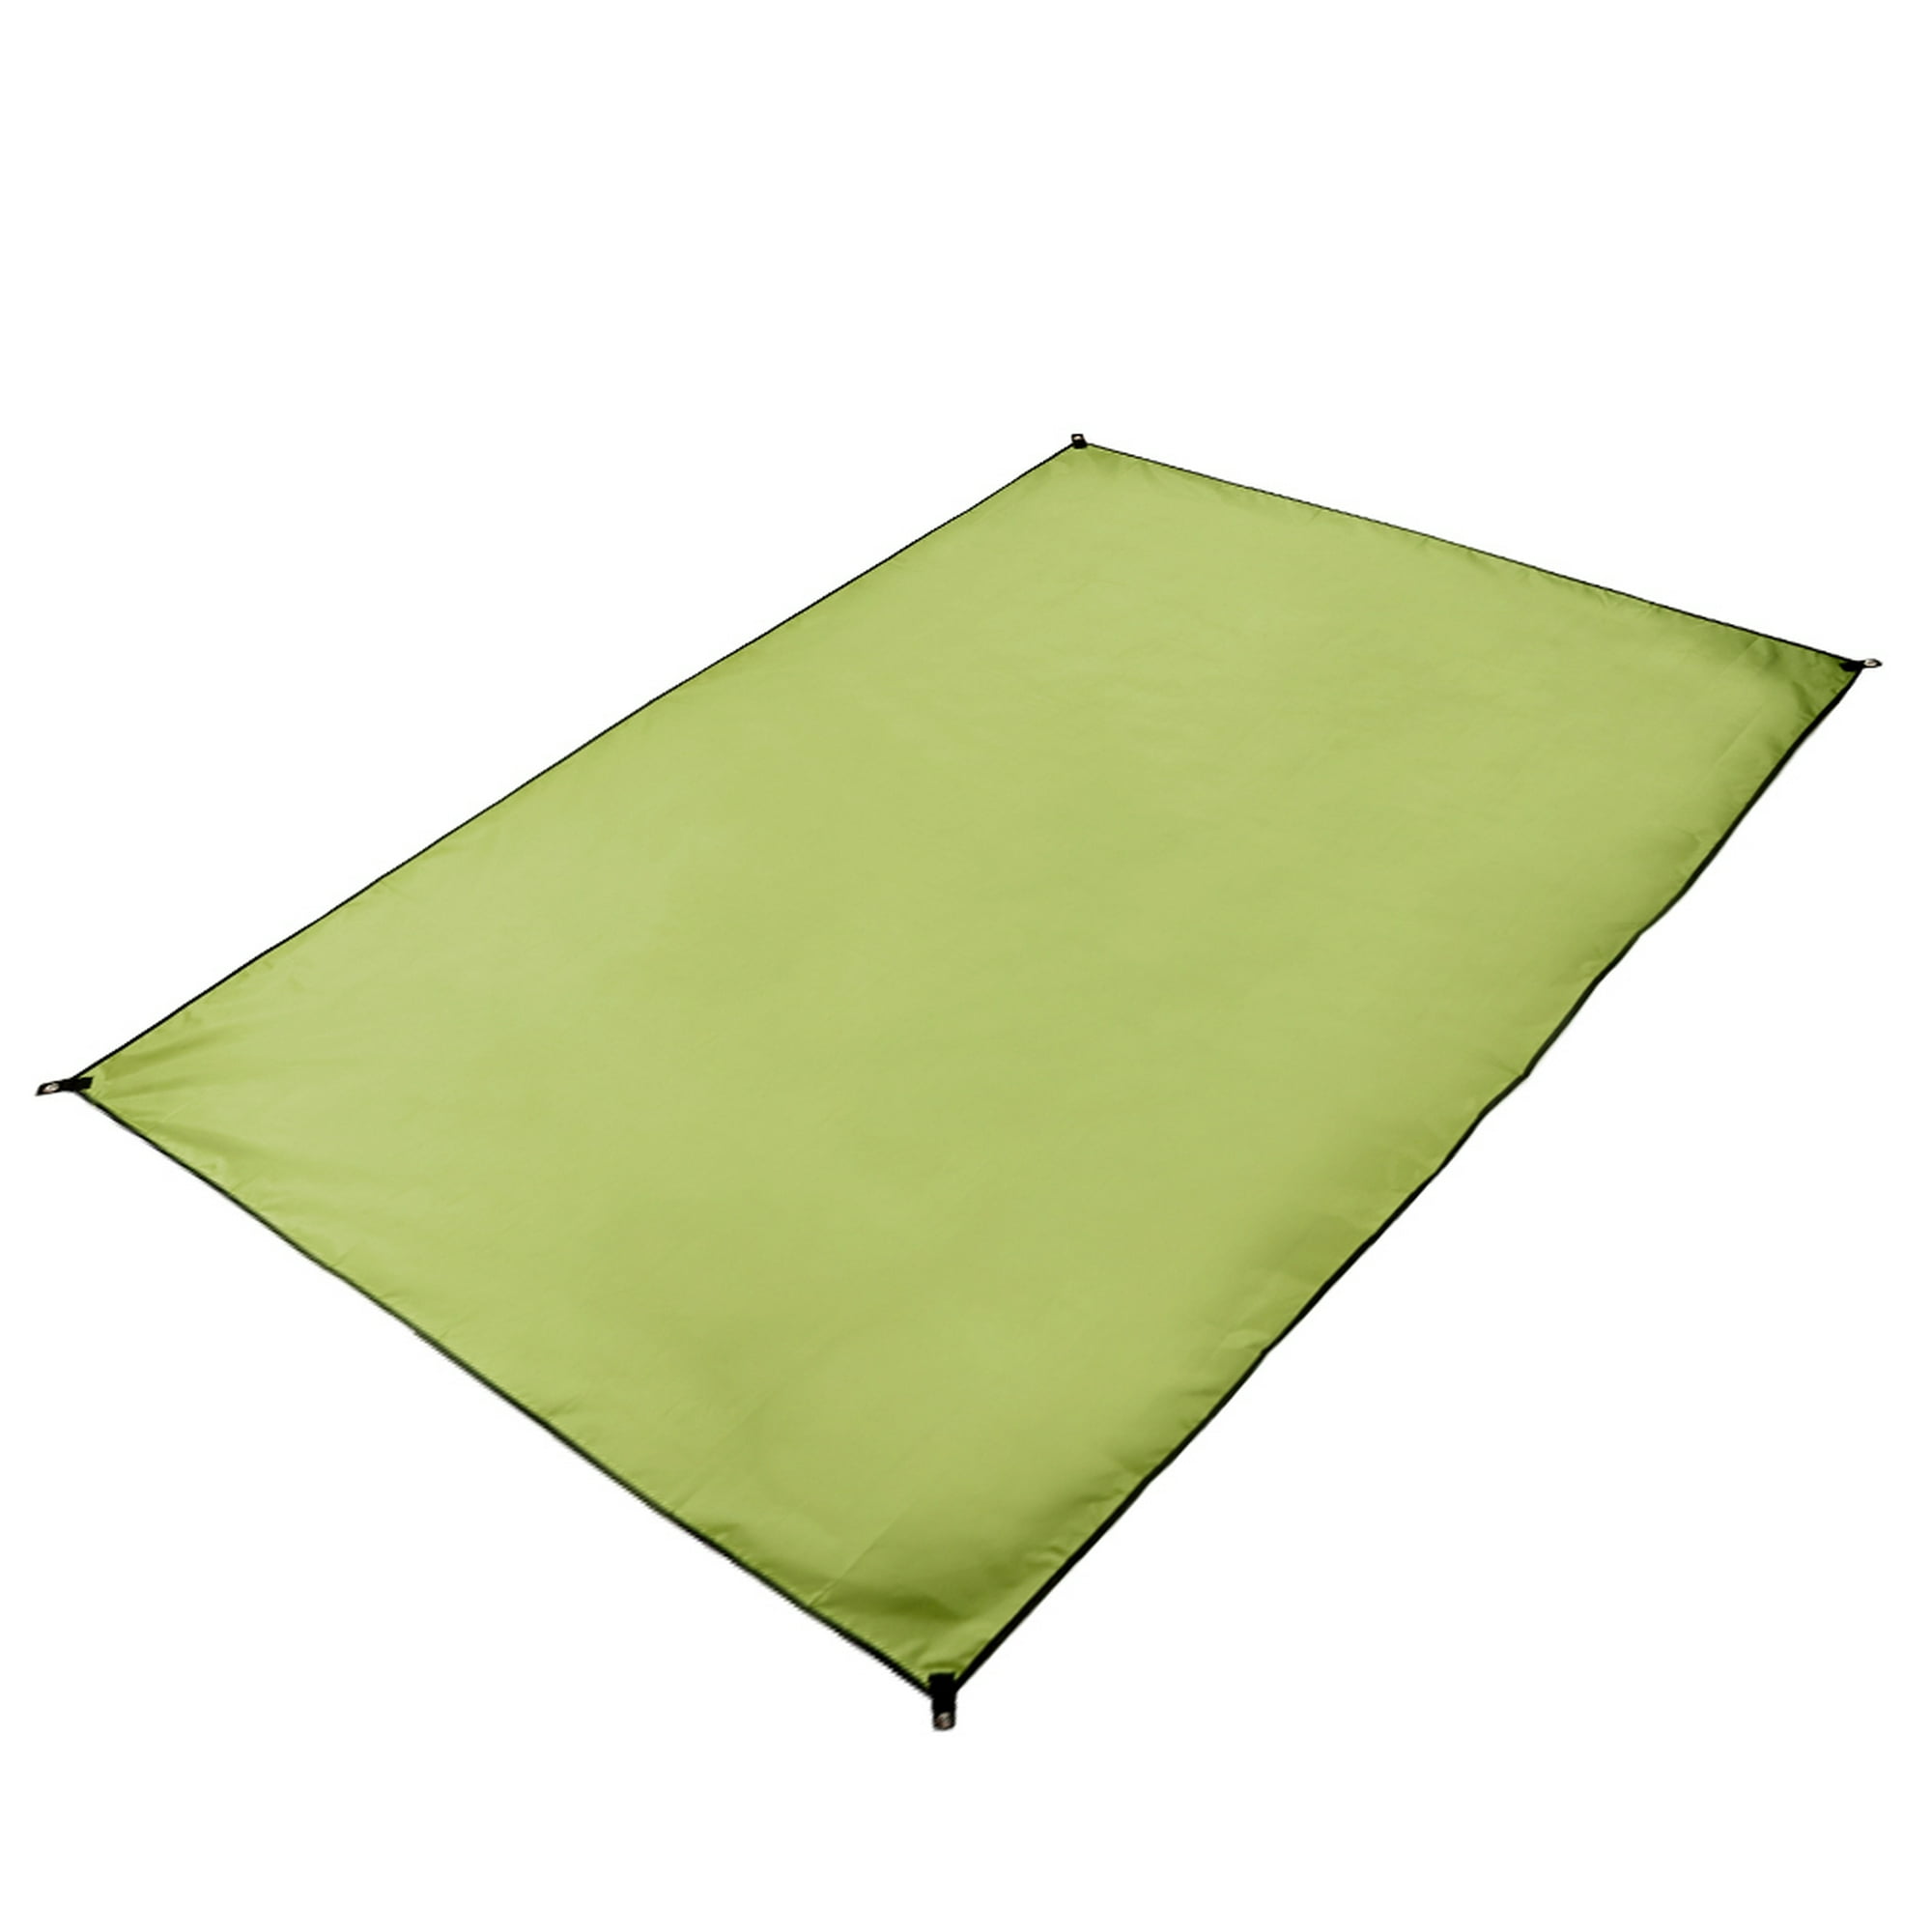 Lona impermeable de doble cara con ojales, lona de lona resistente para  muebles de jardín, camping, senderismo, picnic (verde)